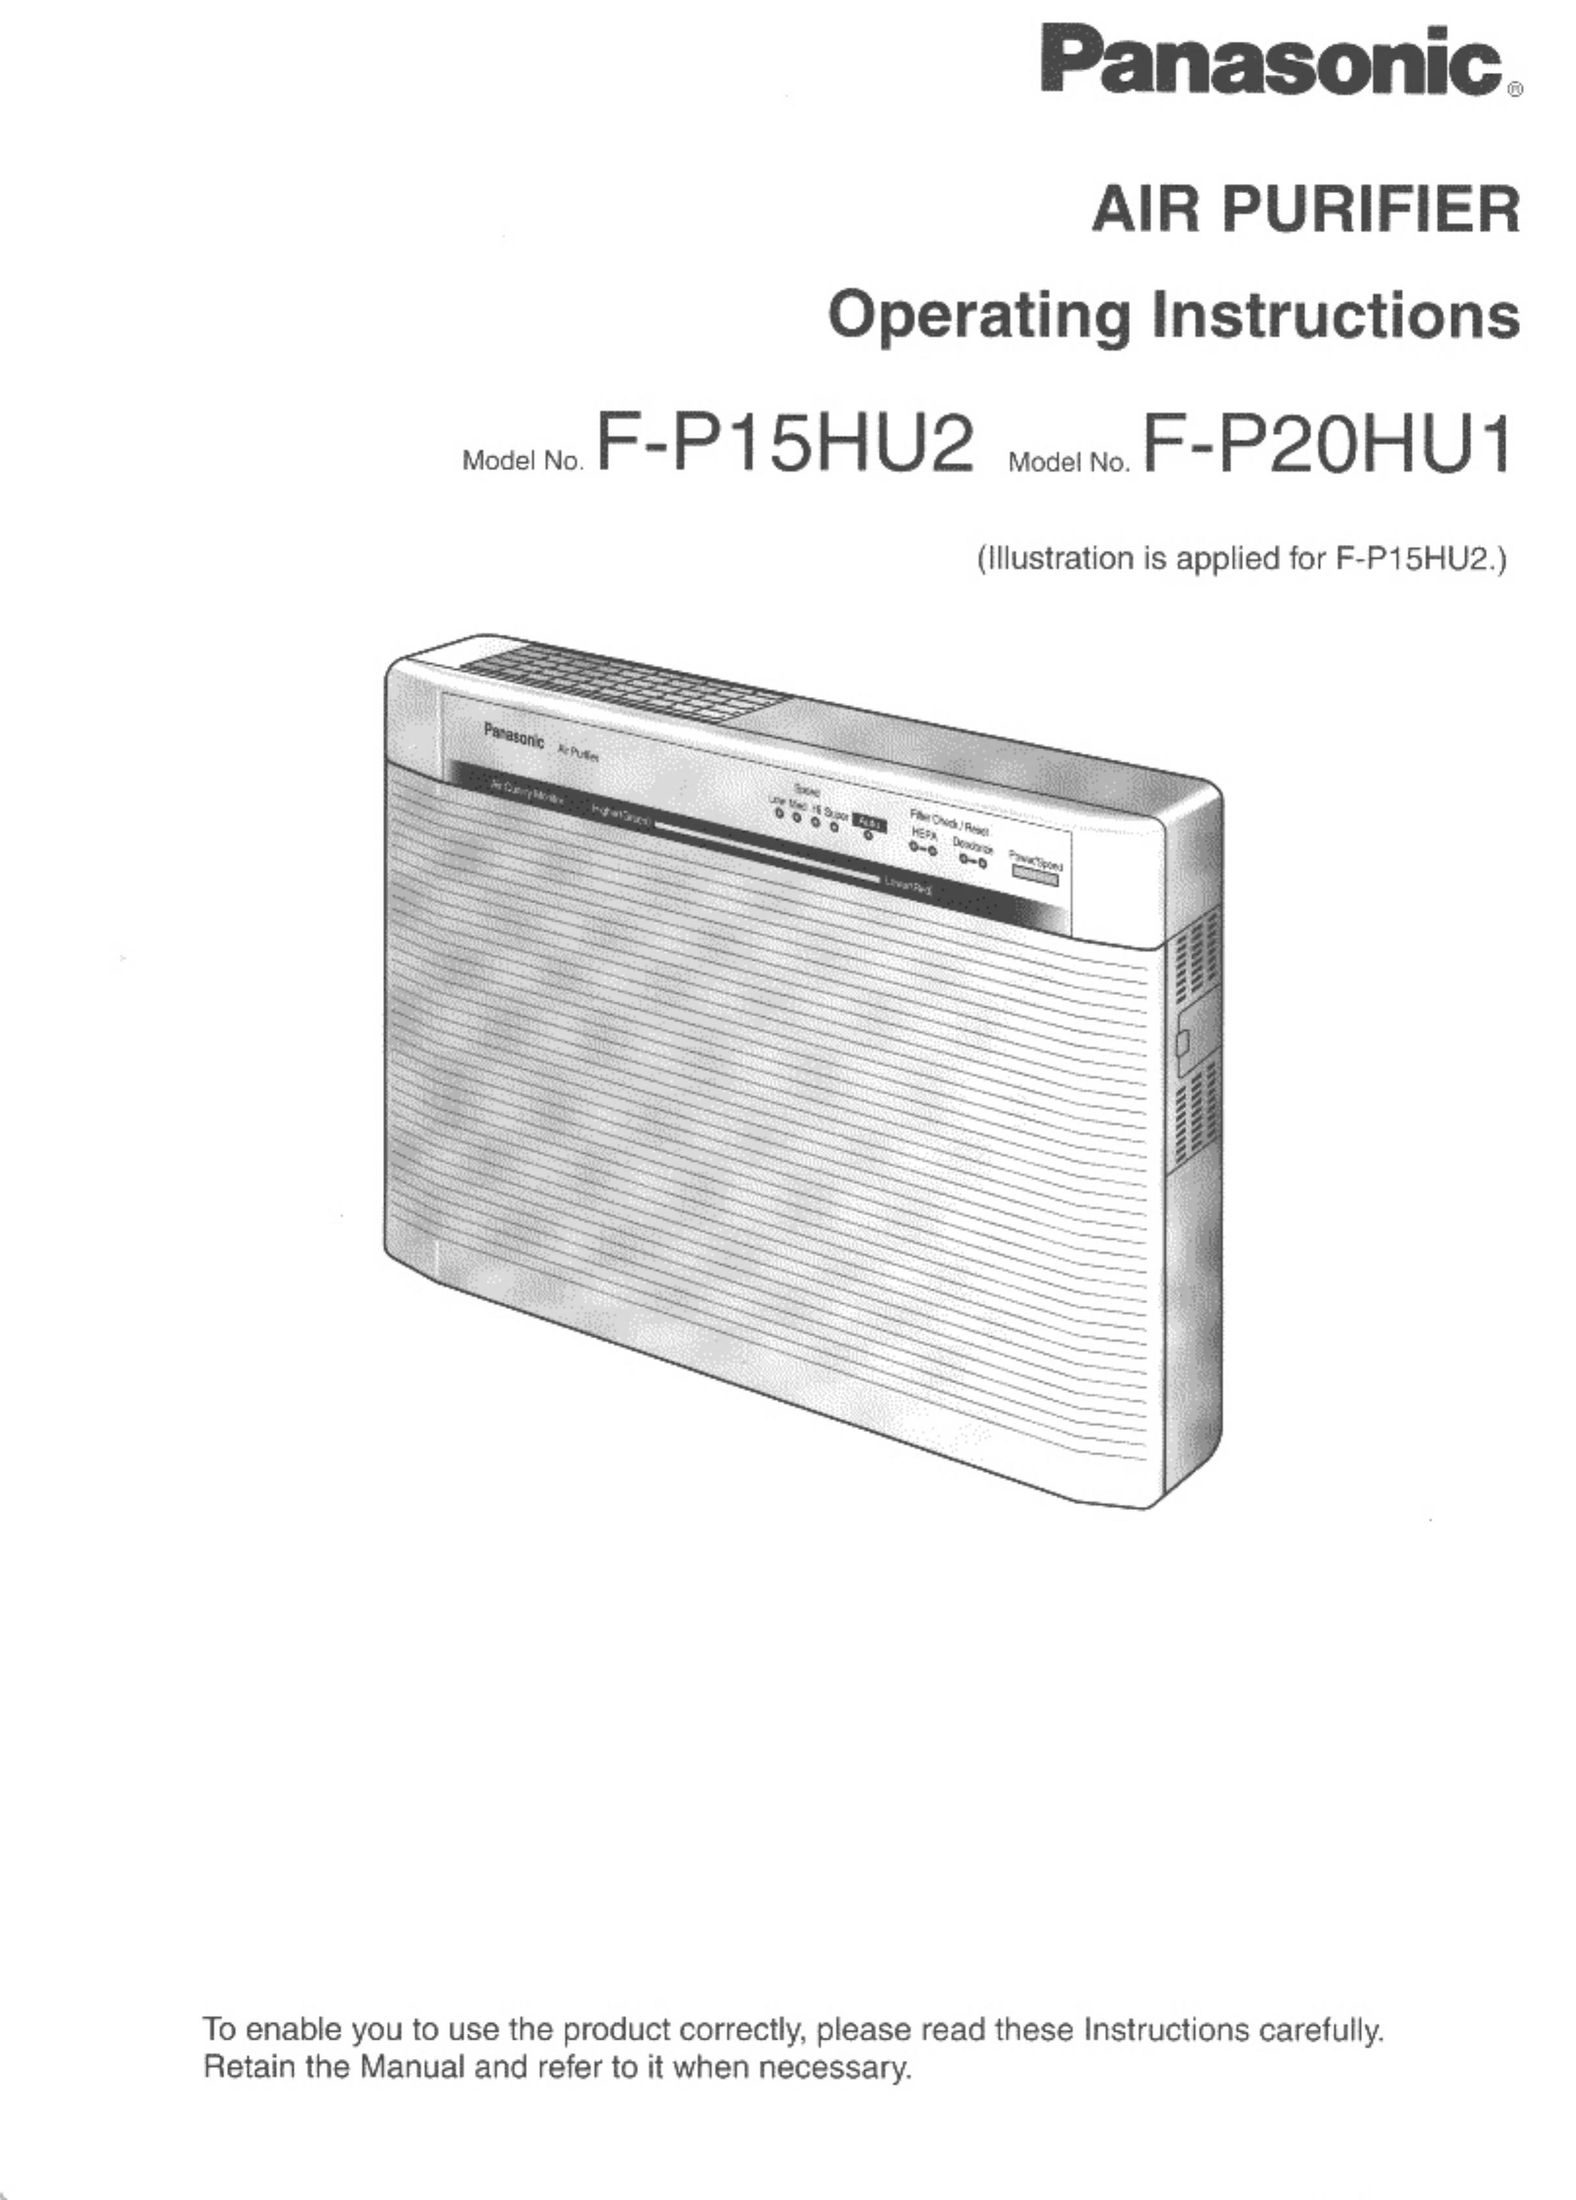 Panasonic F-P15HU2 Air Cleaner User Manual